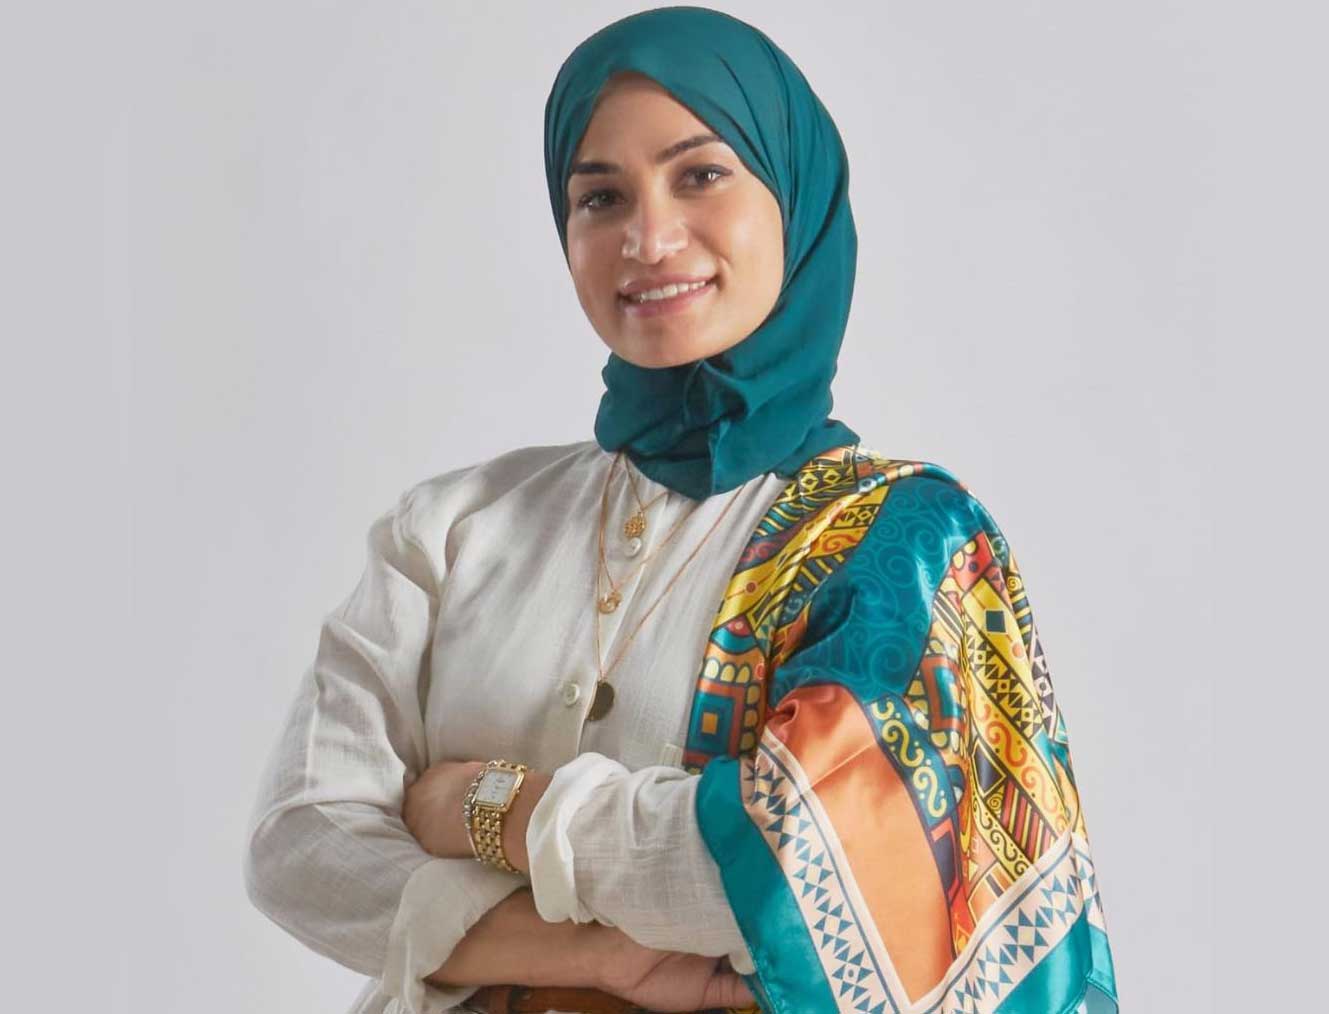 وفاء سعيد مصممة أزياء مصرية تطبع لوحات فنية على حجاب النساء